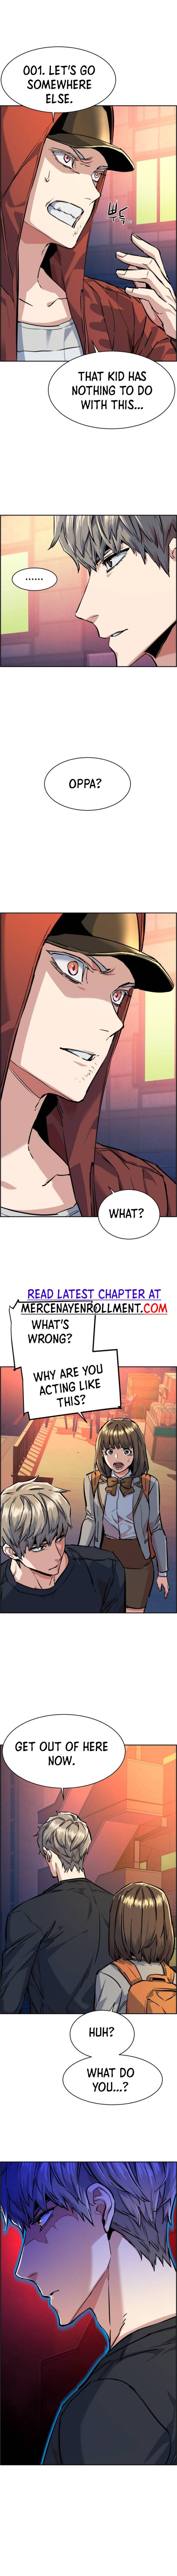 Mercenary Enrollment, Chapter 54 image 06